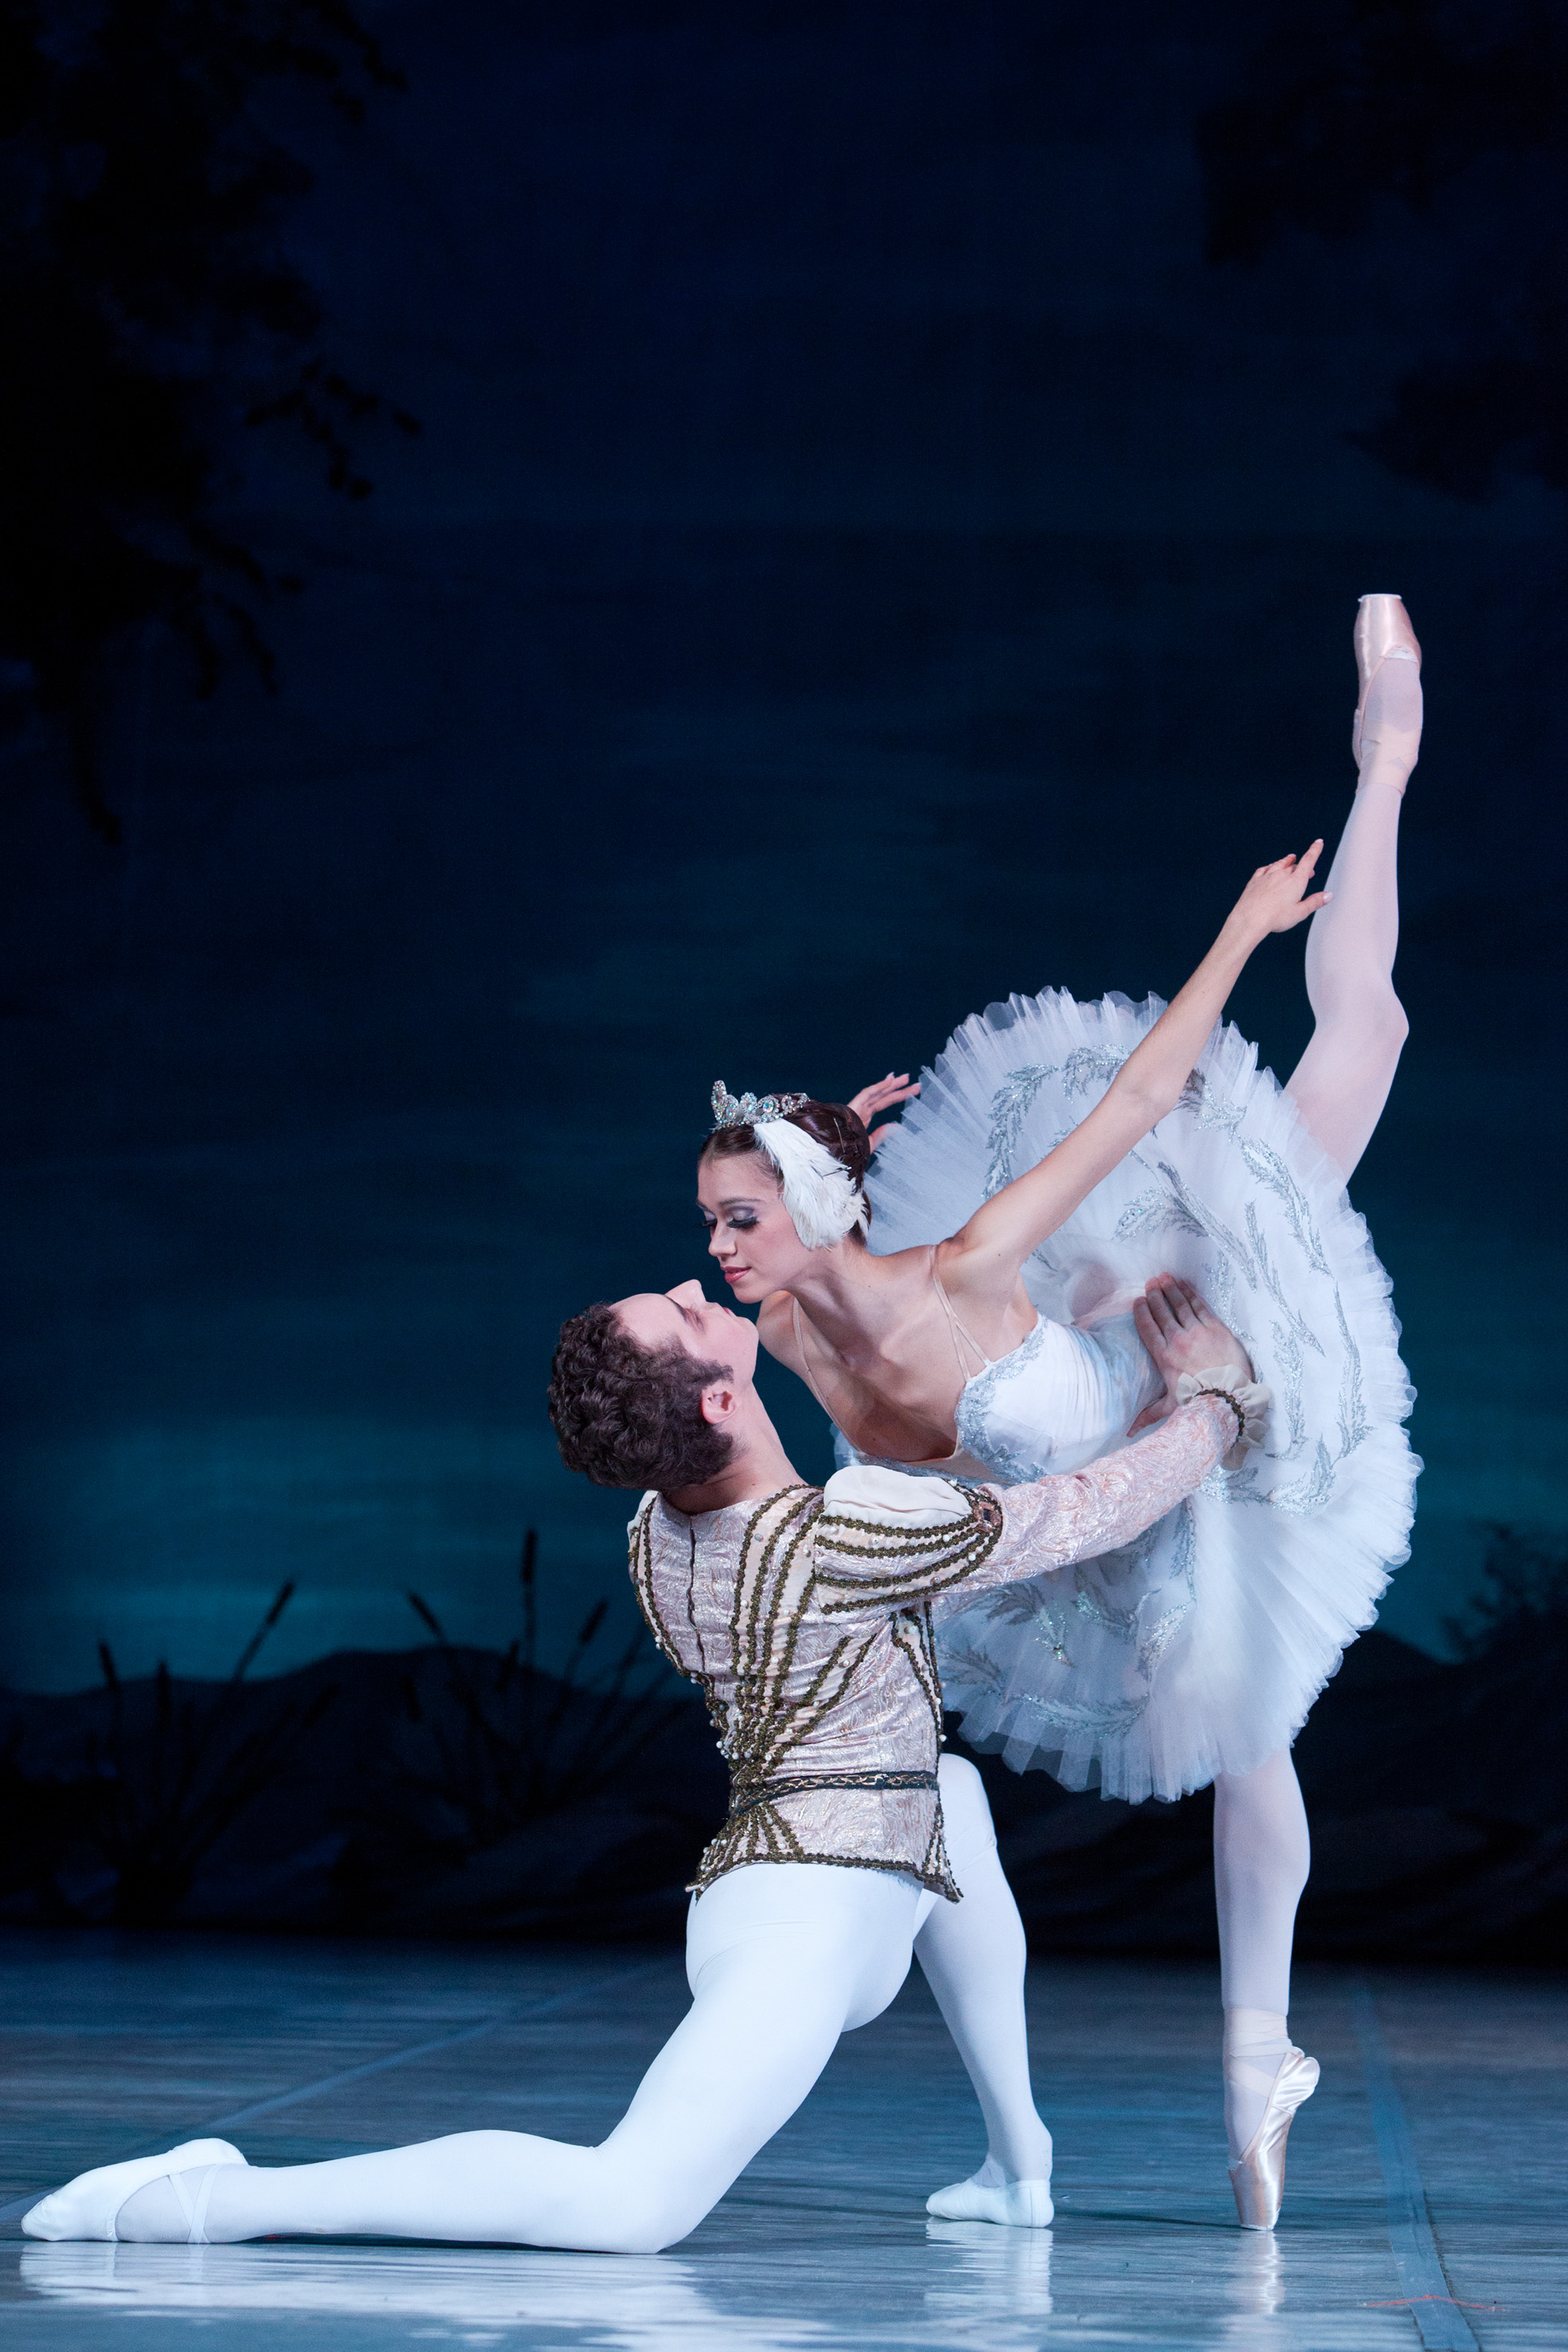 【抢票】俄罗斯芭蕾国家剧院芭蕾舞《天鹅湖》翩然落地国际庄